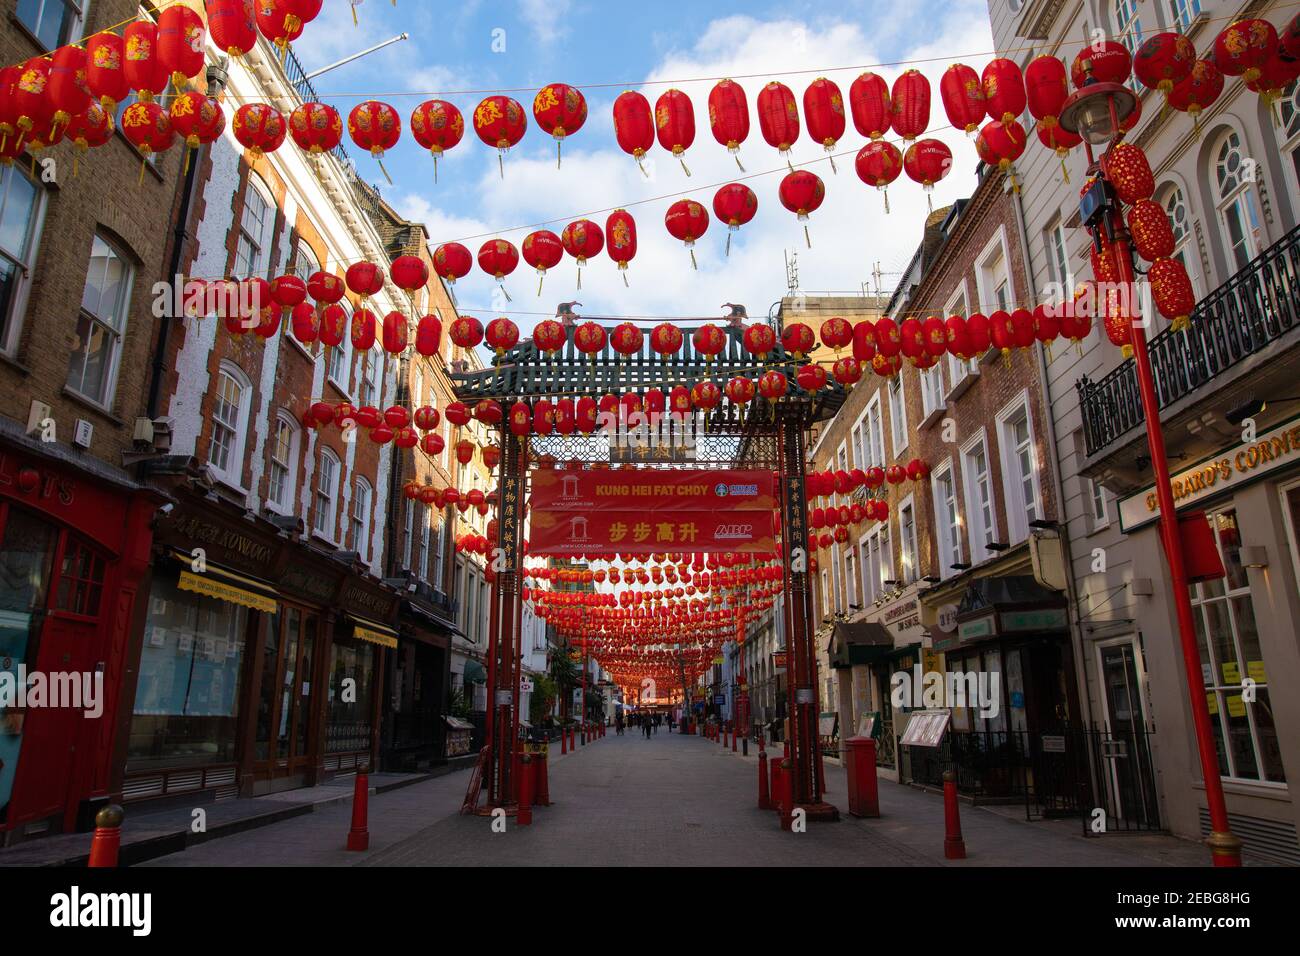 China Town, London, Großbritannien, 12th. Februar 2021. Chinesische Neujahrsdekorationen. Chines Neujahr ist ein großes Ereignis, obwohl aufgrund Covid 19 Feiern in diesem Jahr abgesagt wurden. Dekorationen wurden immer noch in China Town aufgesetzt, die Straße festooning. Dieses Jahr ist das Jahr des Ochsen Stockfoto